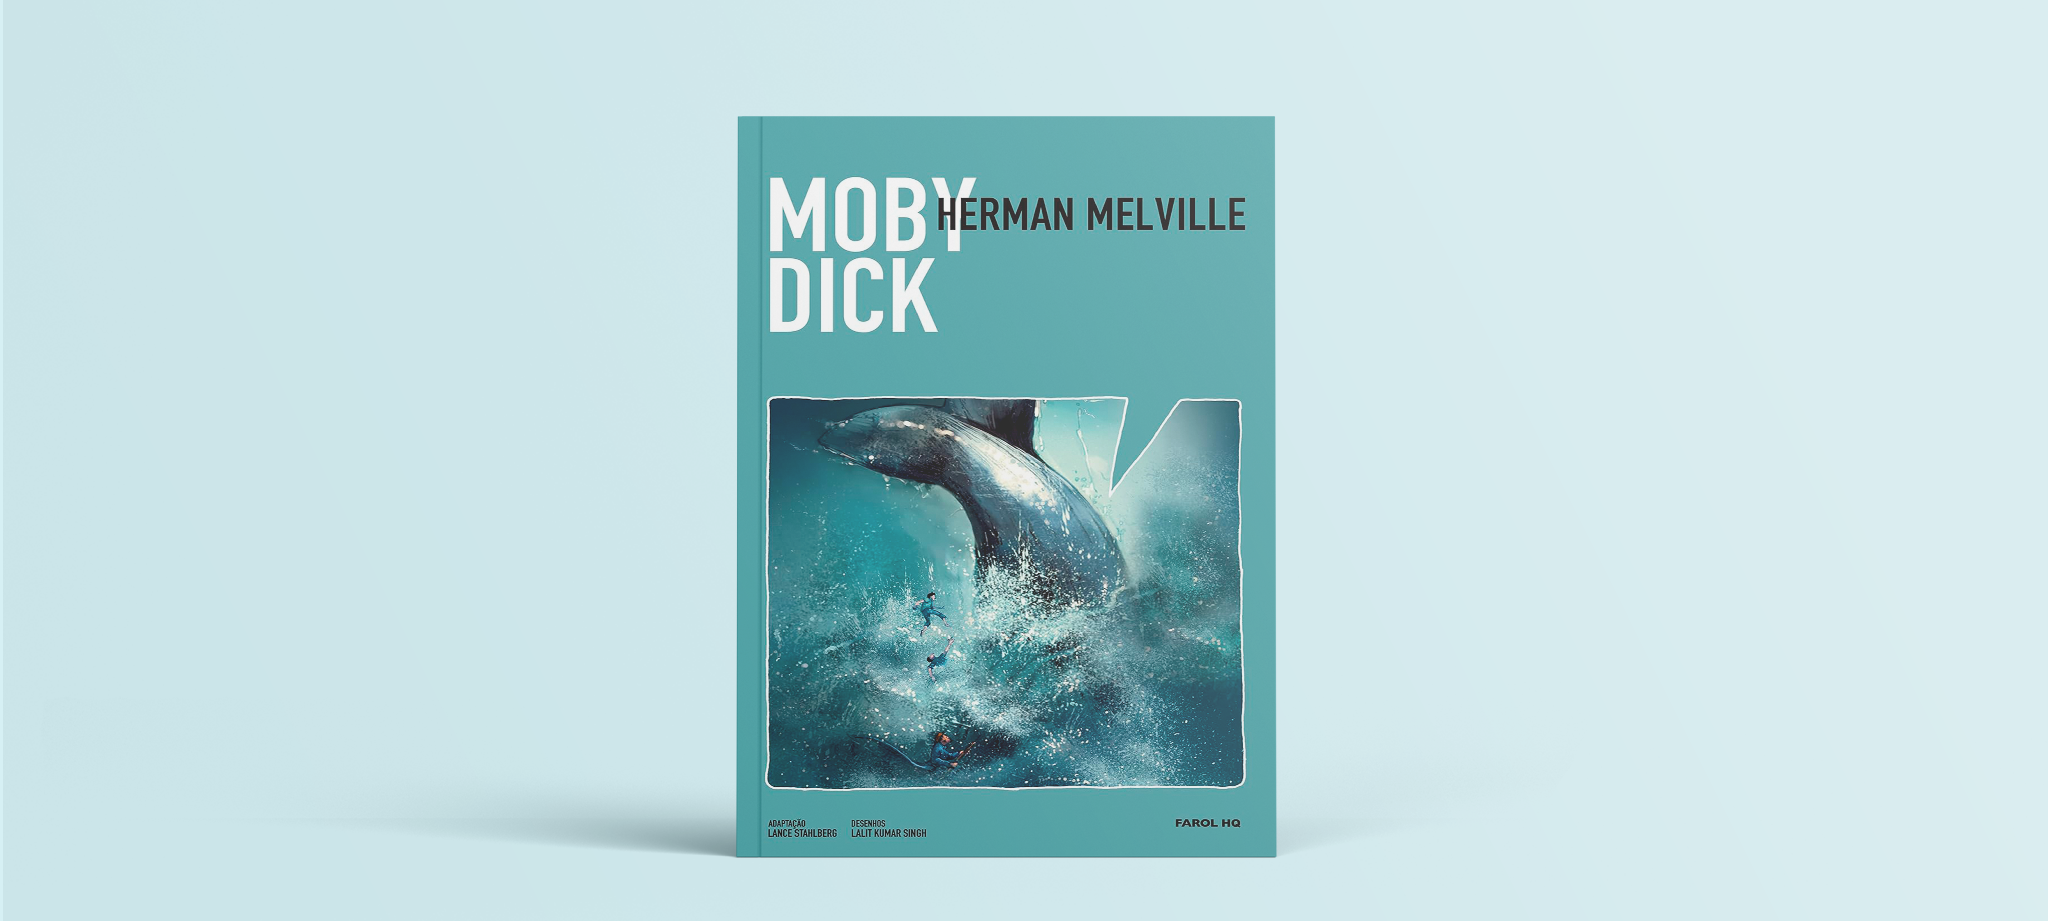 Moby Dick em quadrinhos